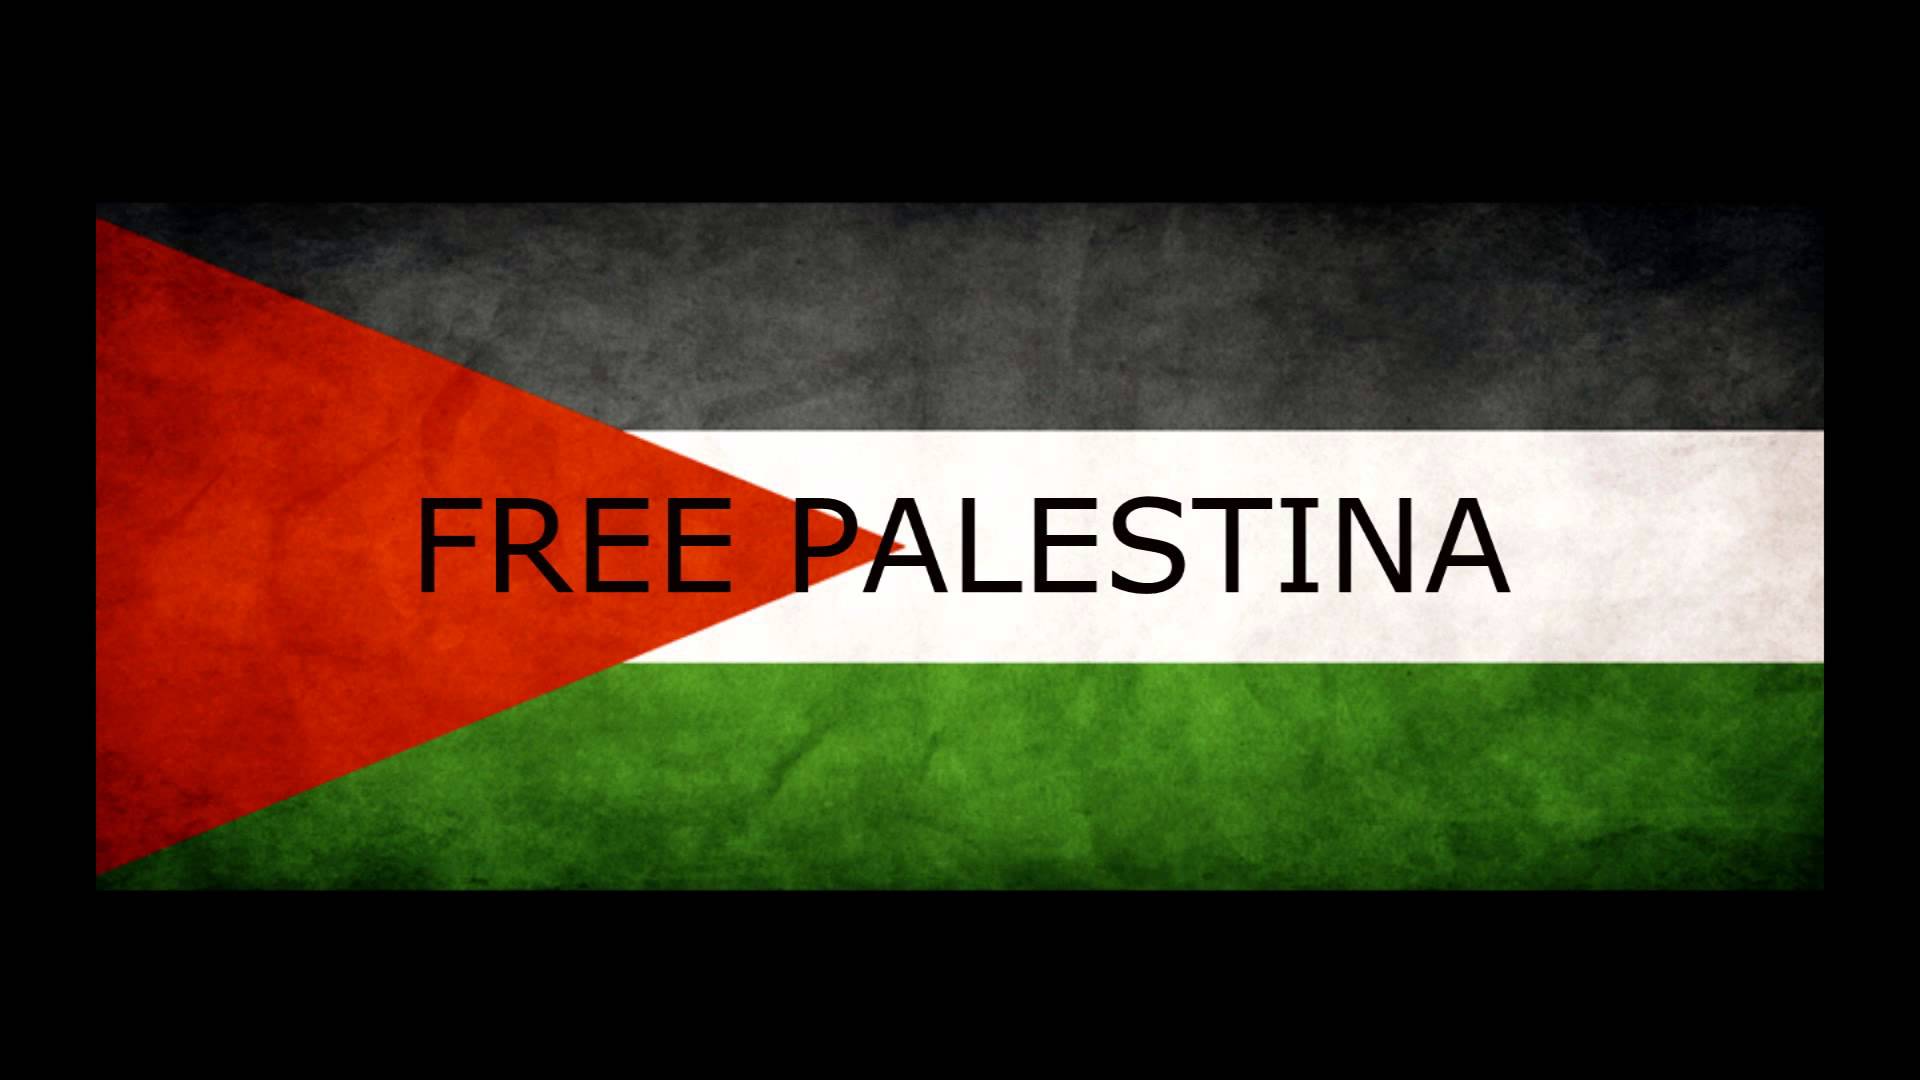 i love palestine flag wallpaper and gaze